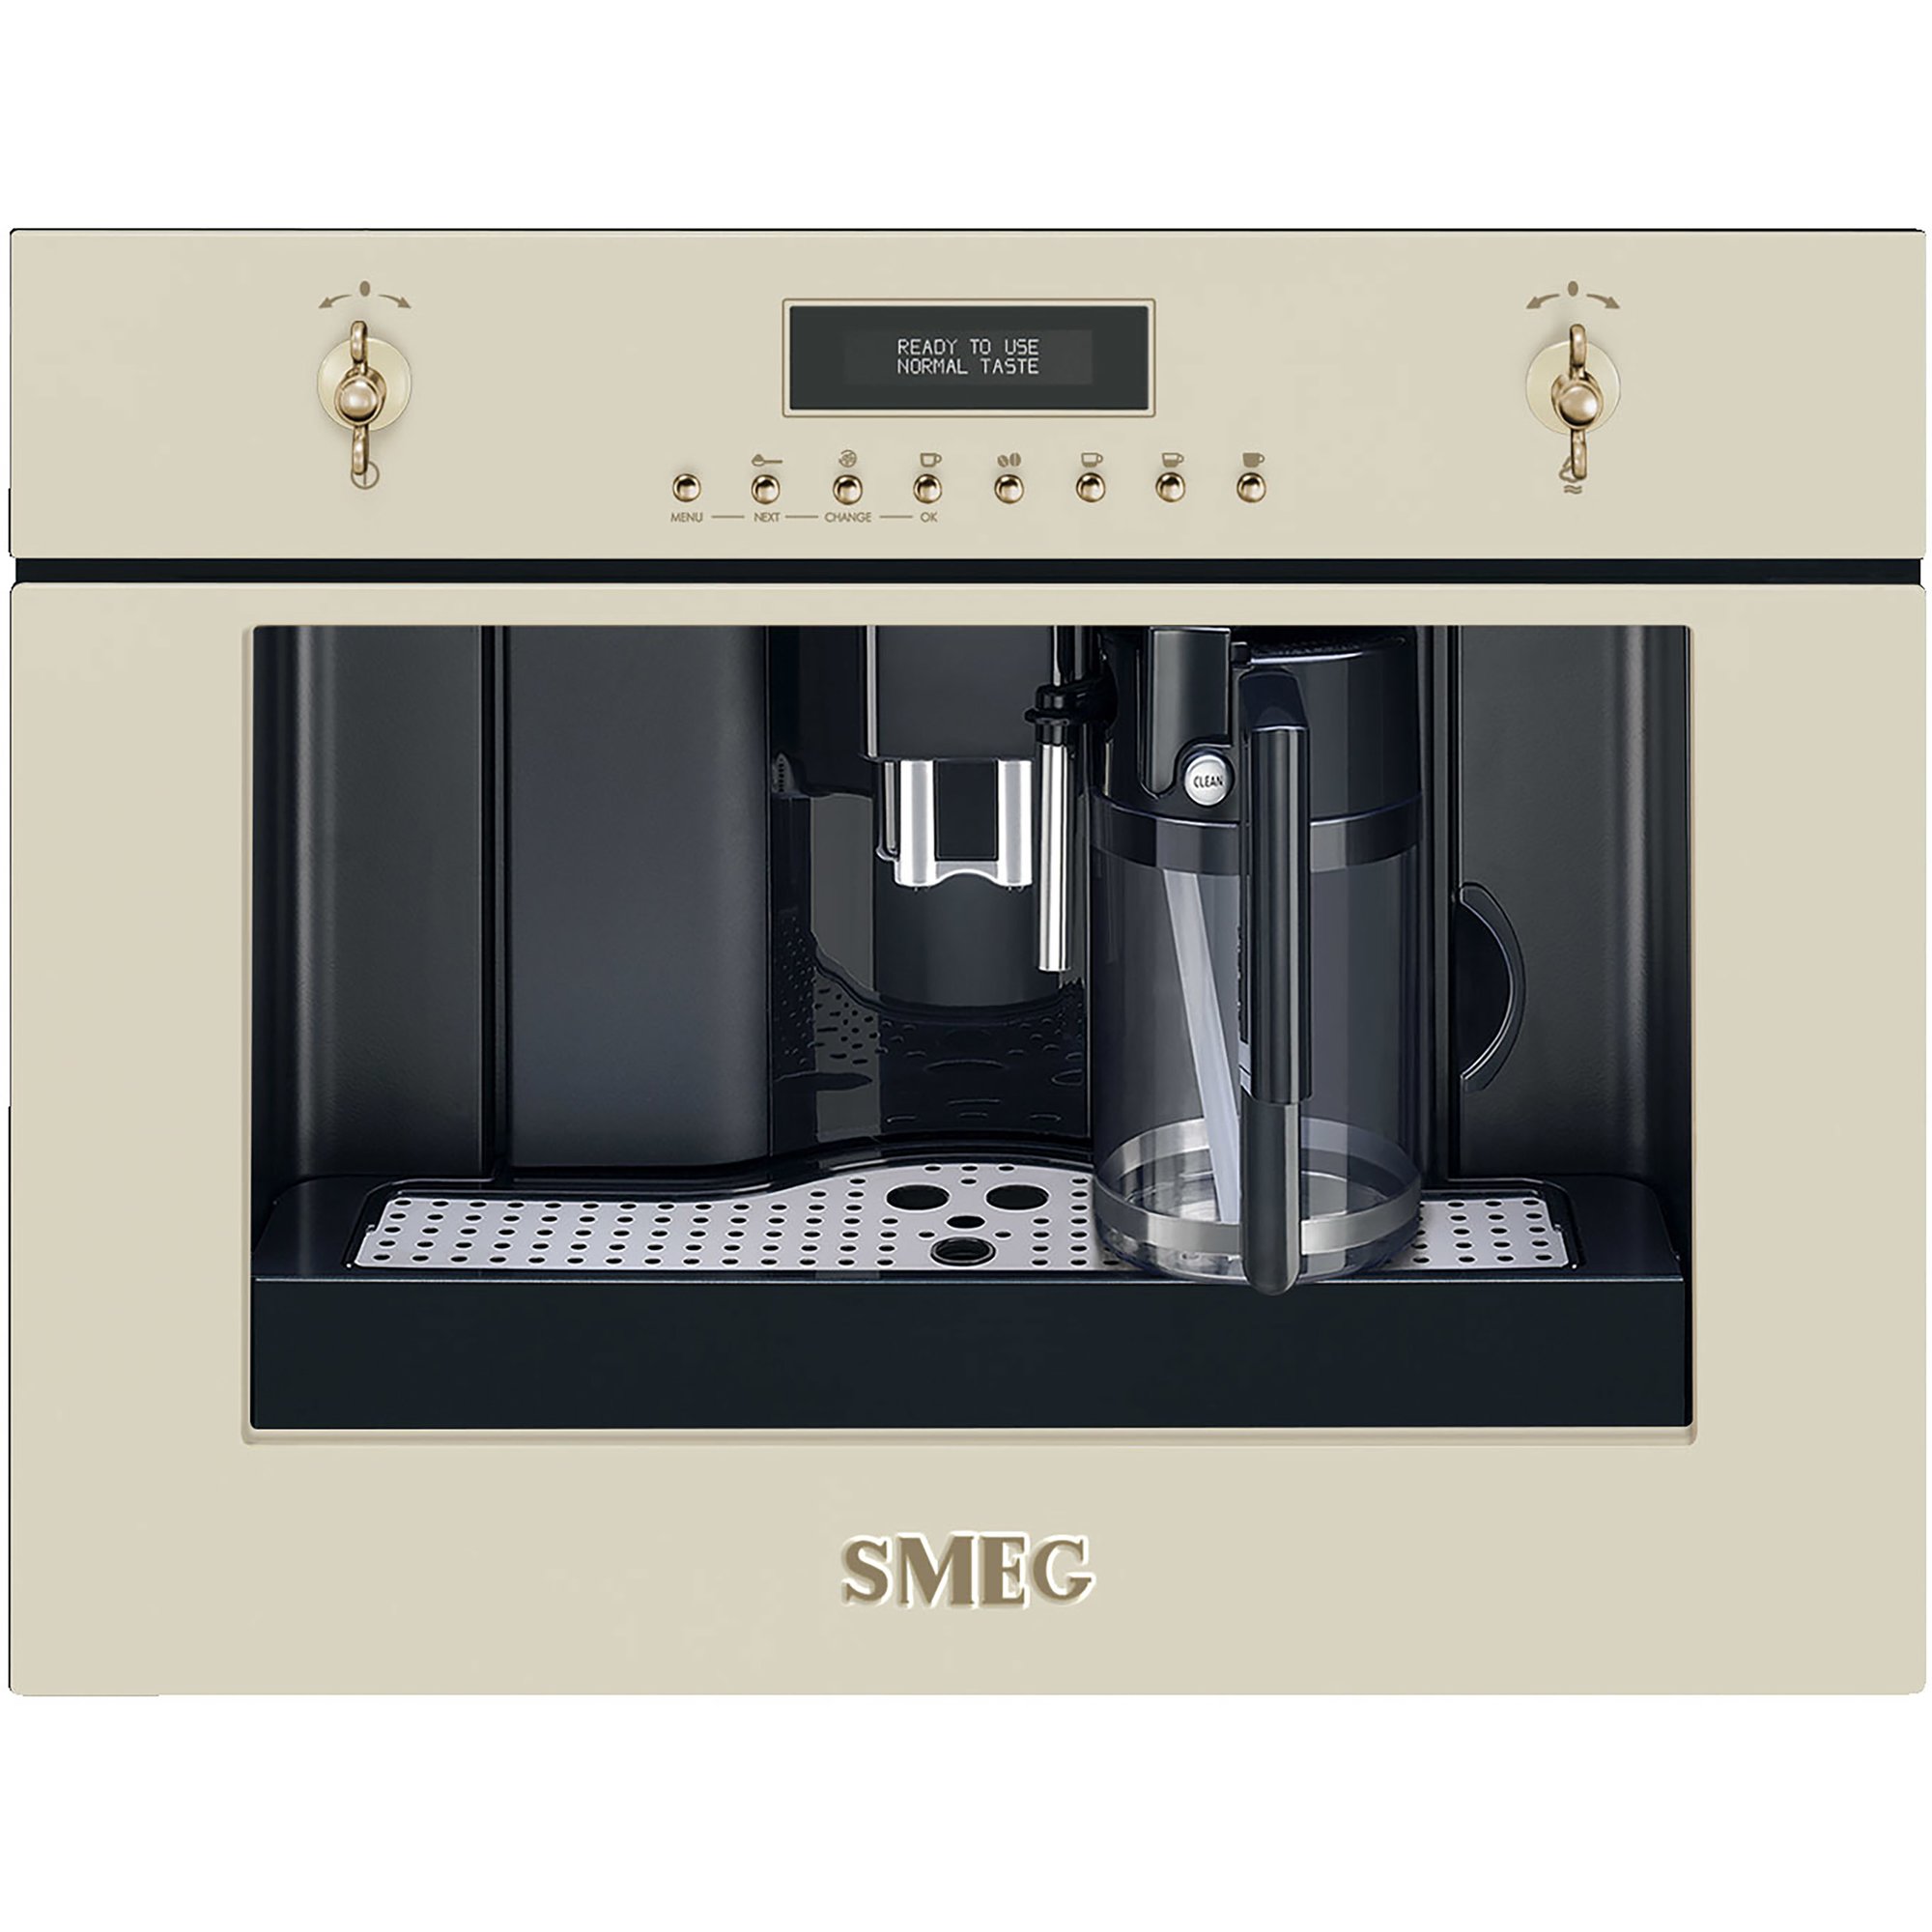 #1 - Smeg 60 cm indbygget kaffemaskine i creme